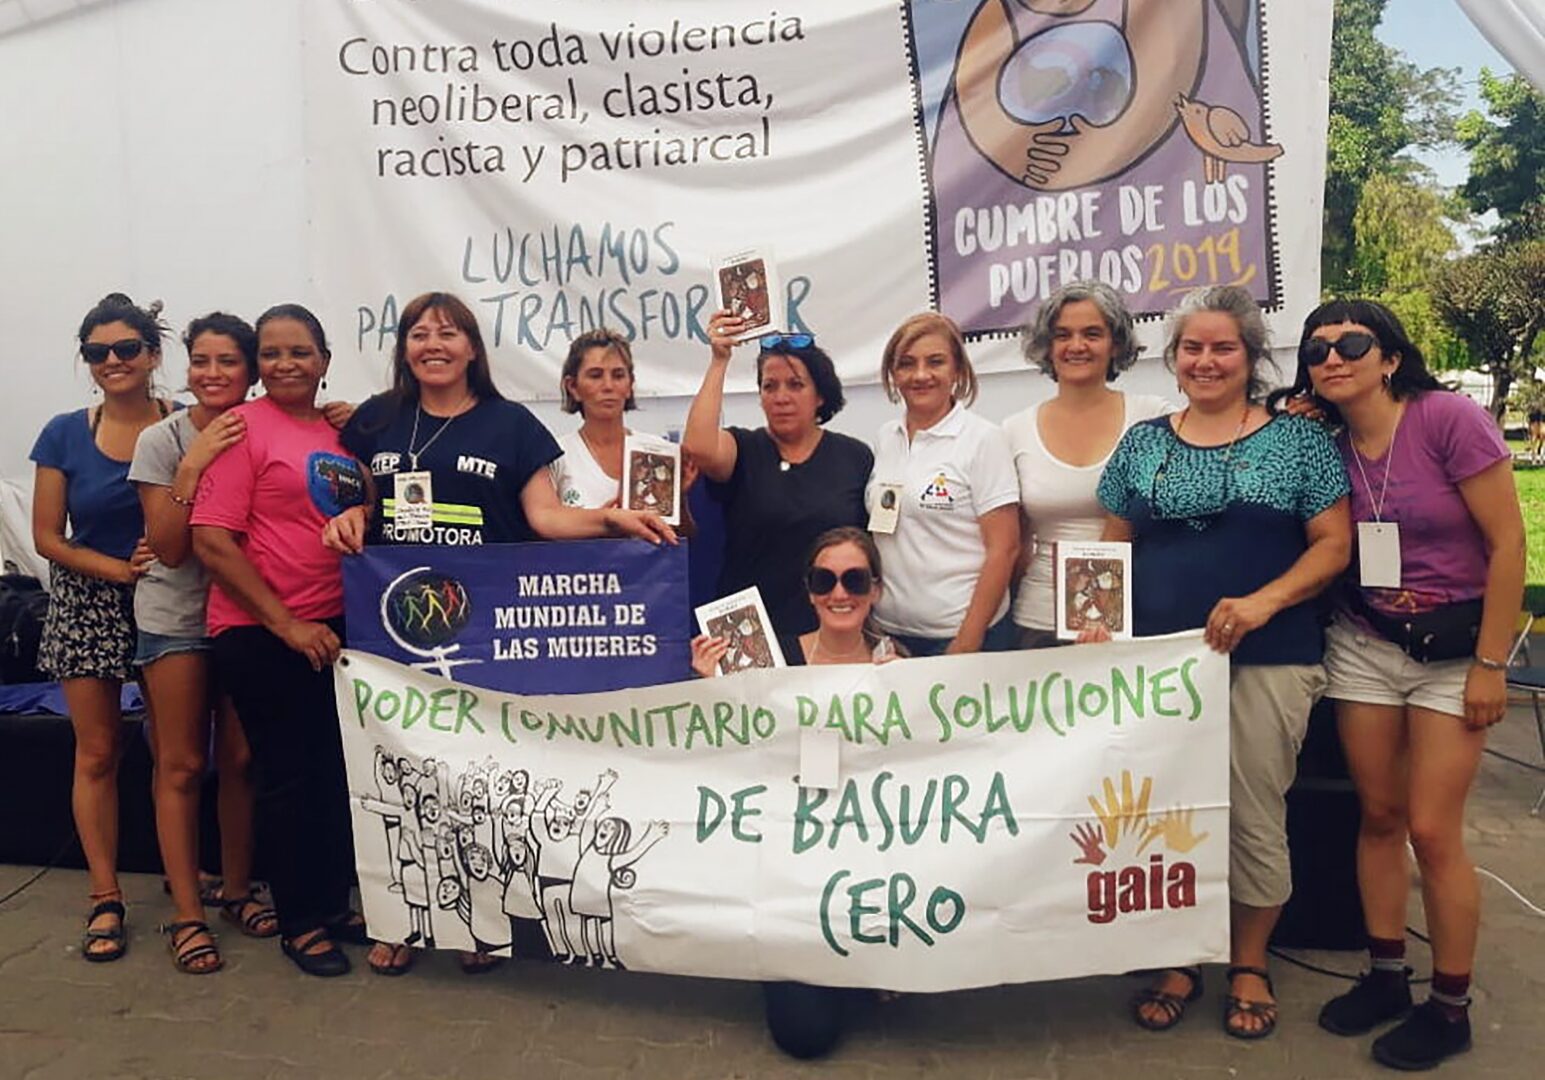 تقف المجموعة وهي تحمل لافتة كبيرة لأمريكا اللاتينية "صفر نفايات".